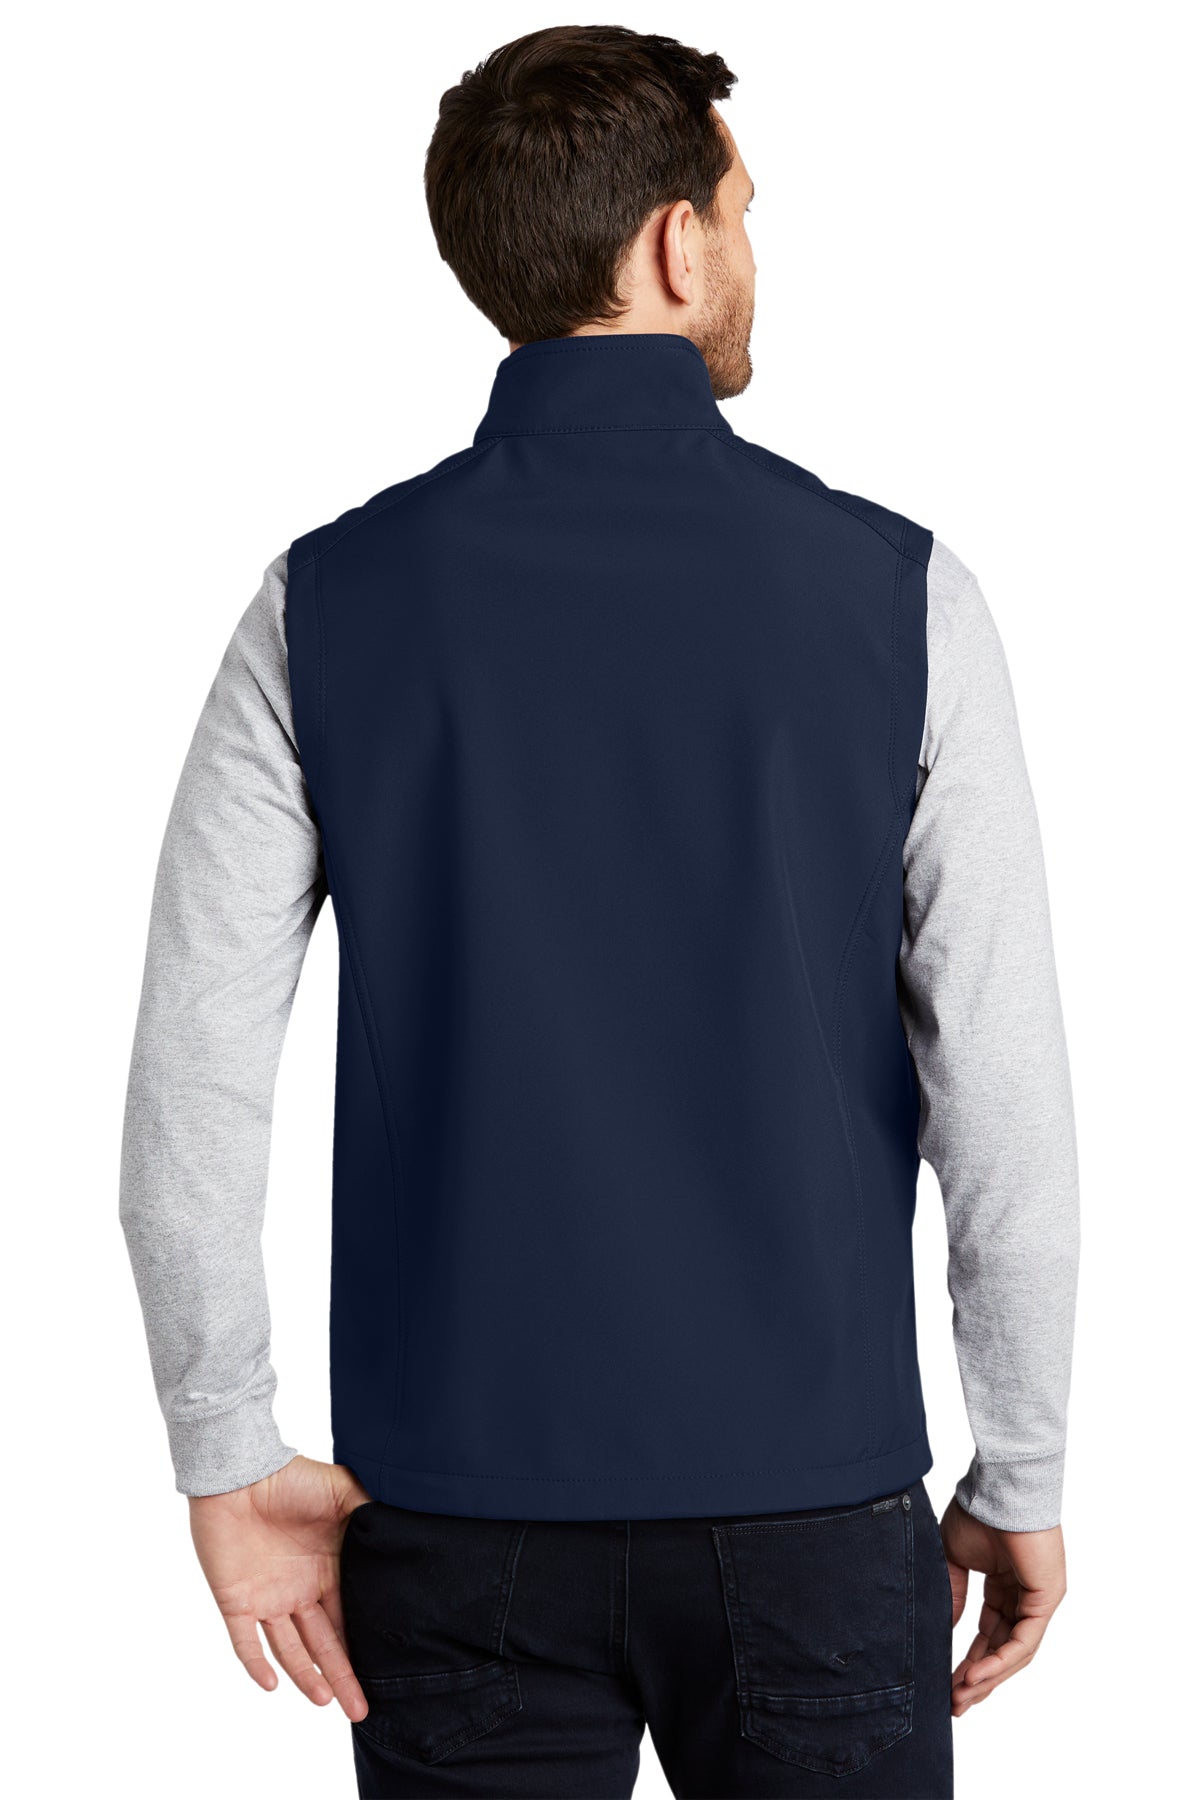 port authority_j325 _dress blue navy_company_logo_jackets